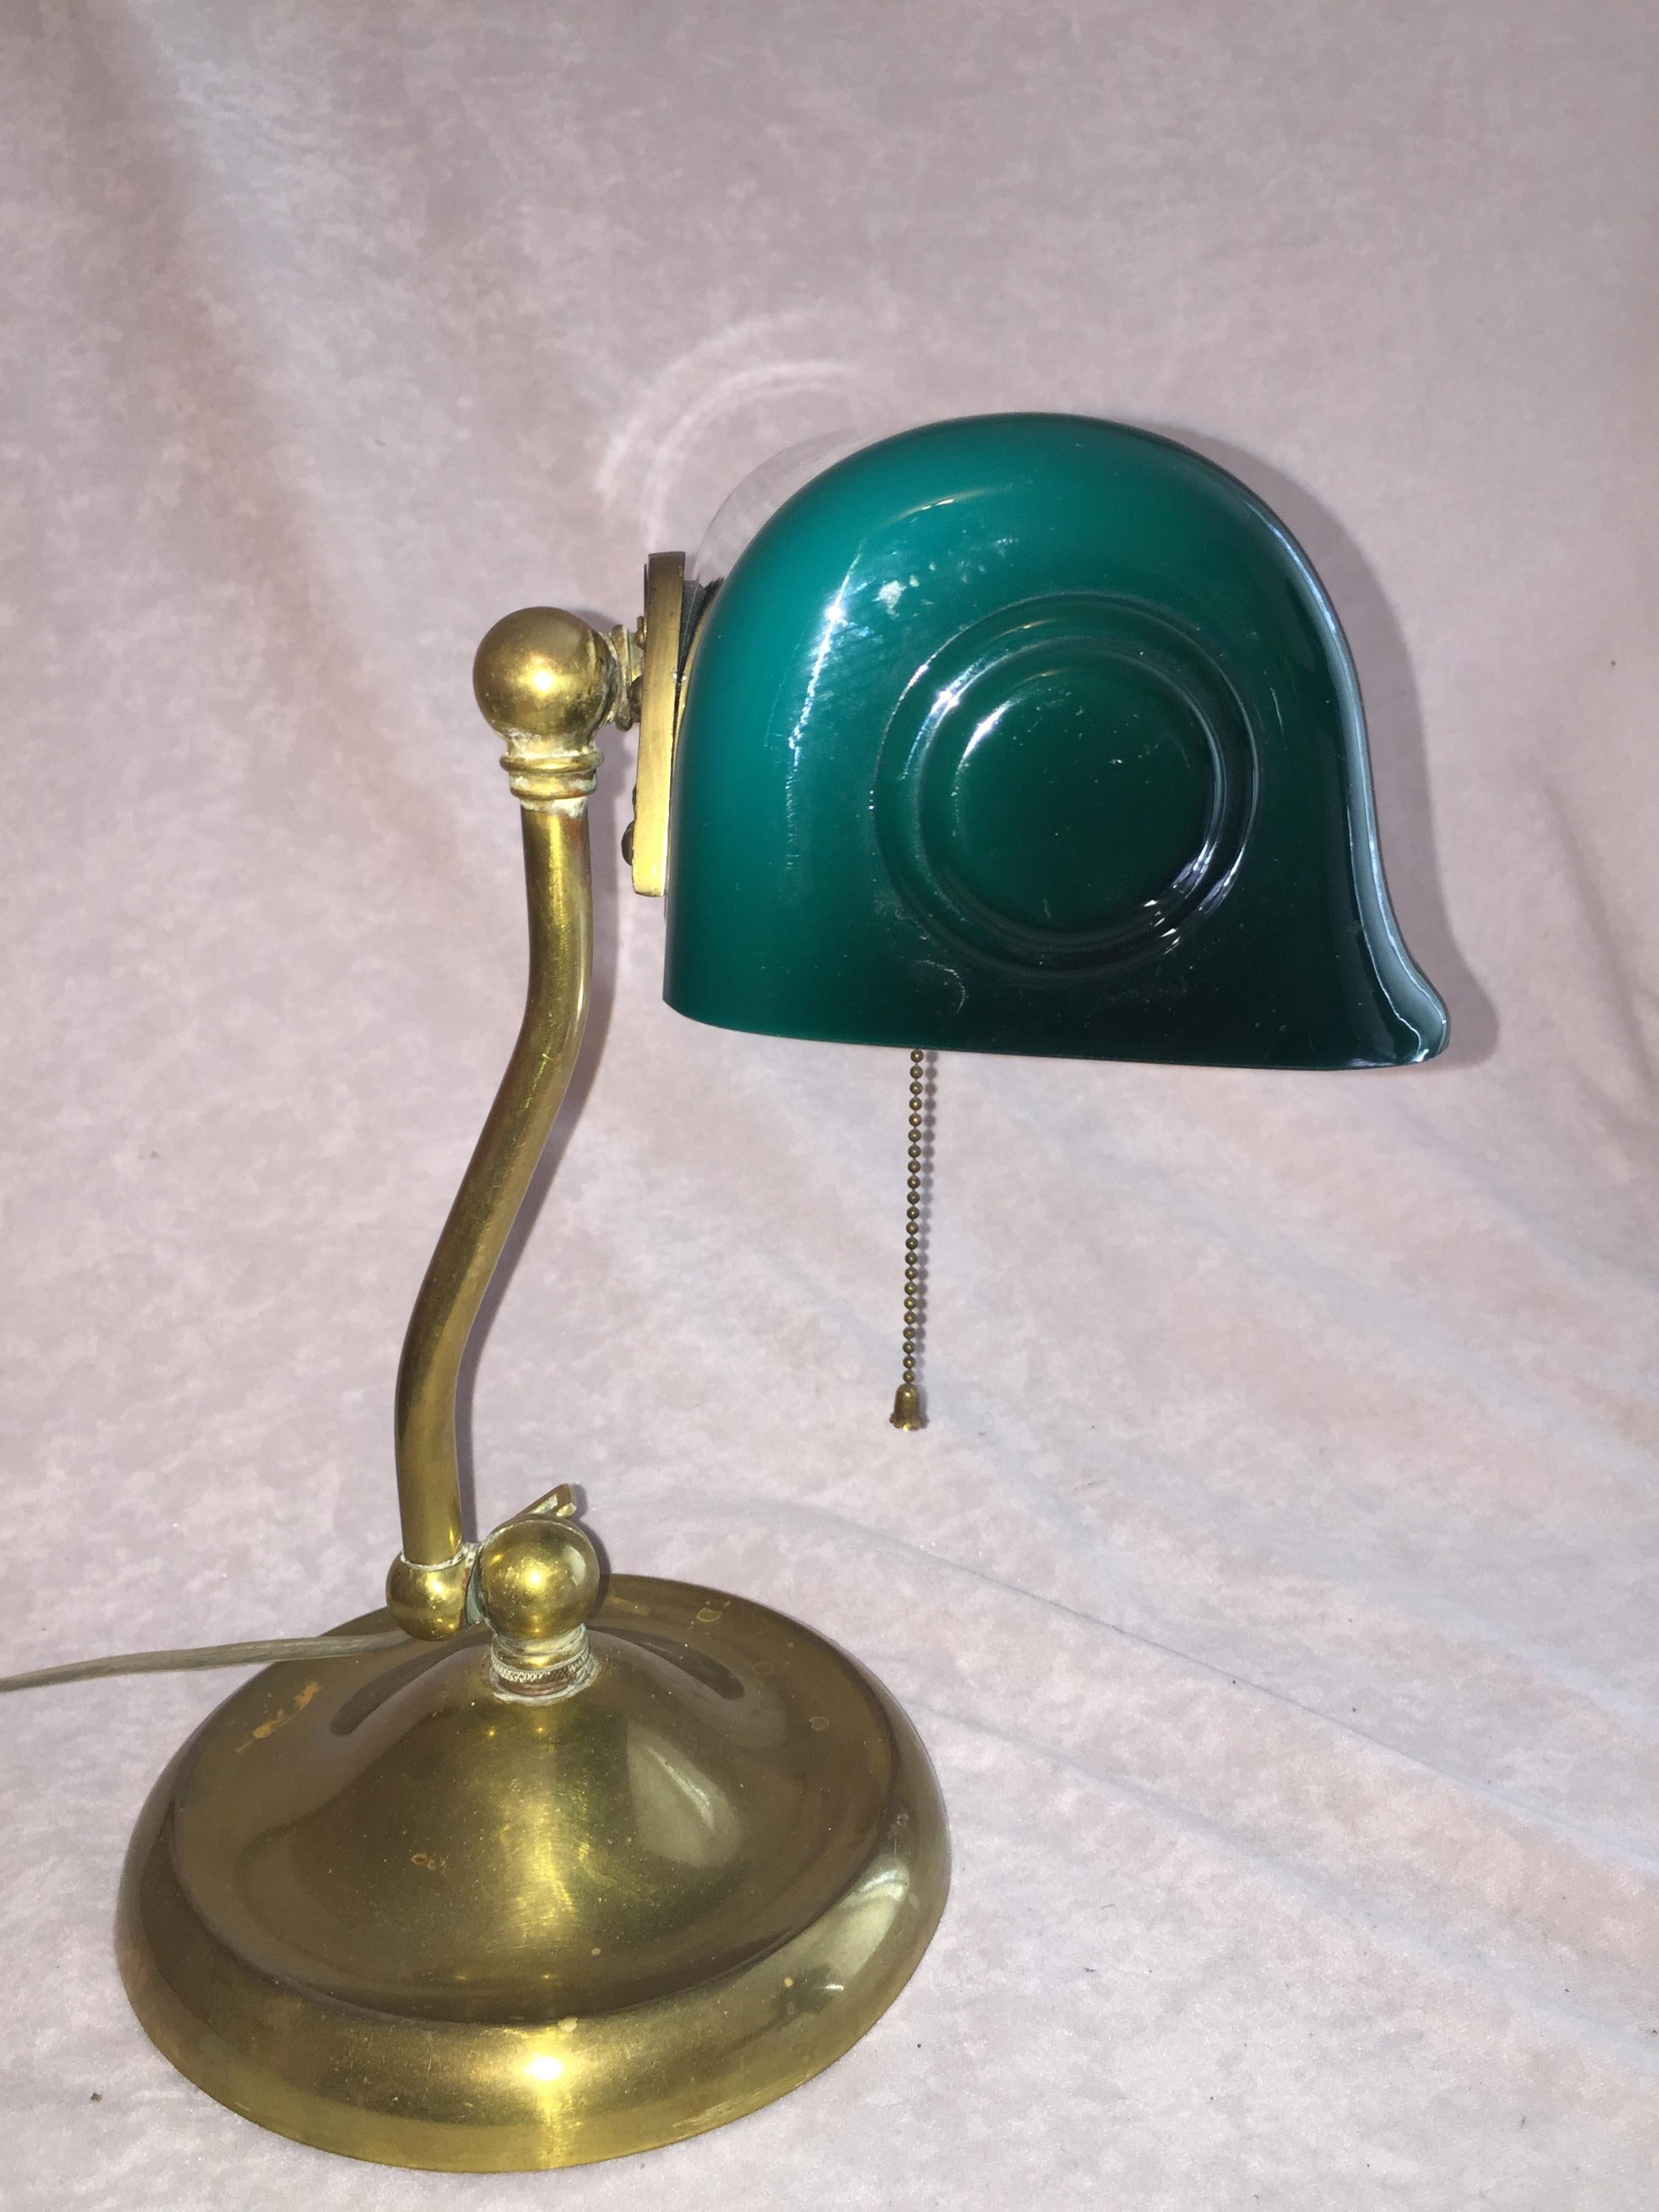 Cast Antique Banker's Desk Lamp w/ Green Shade Signed Verdelite, ca. 1920